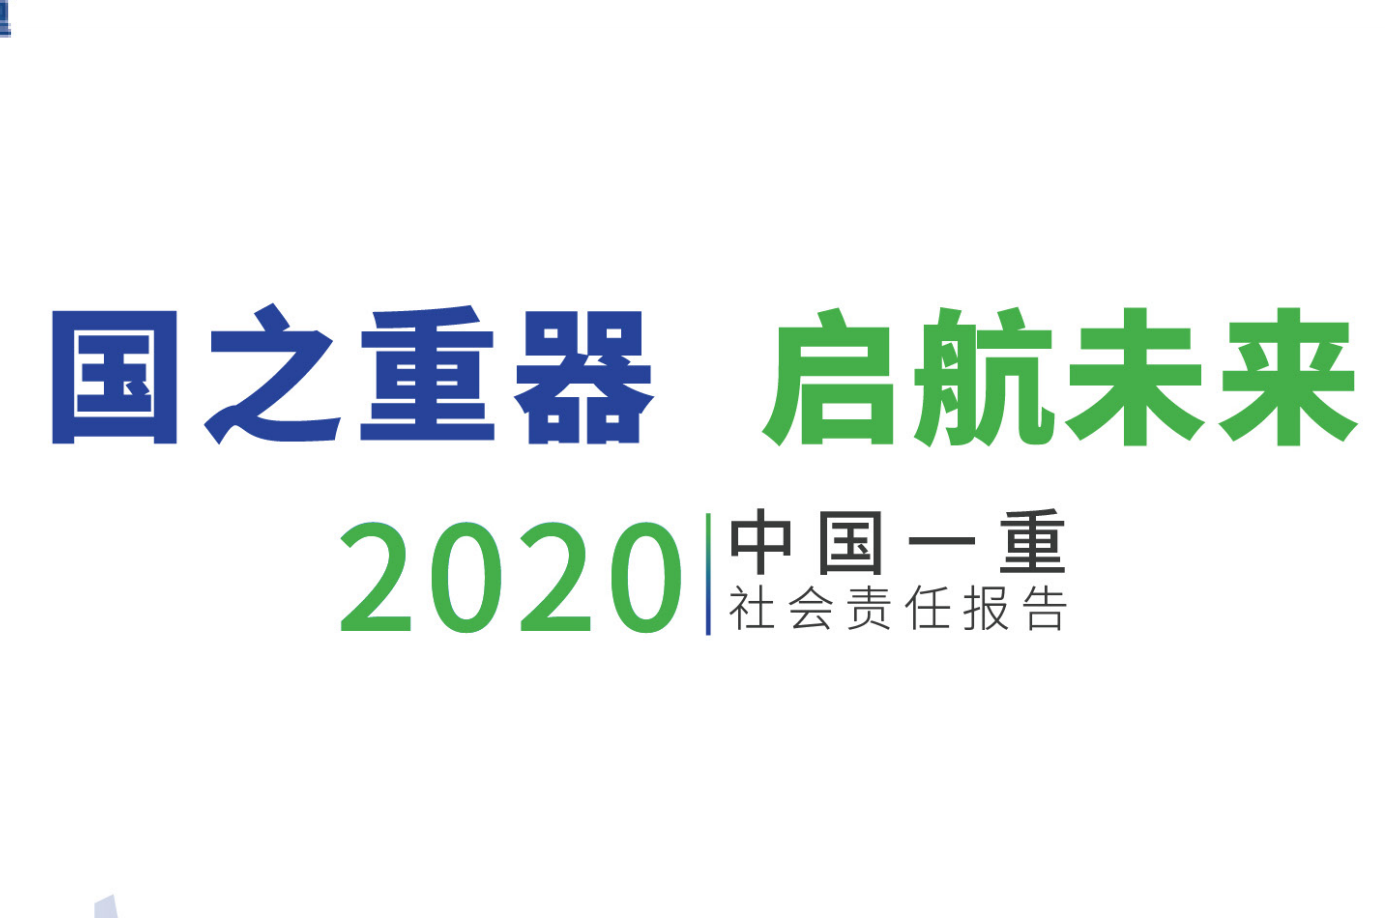 中国一重集团有限公司社会责任报告2020